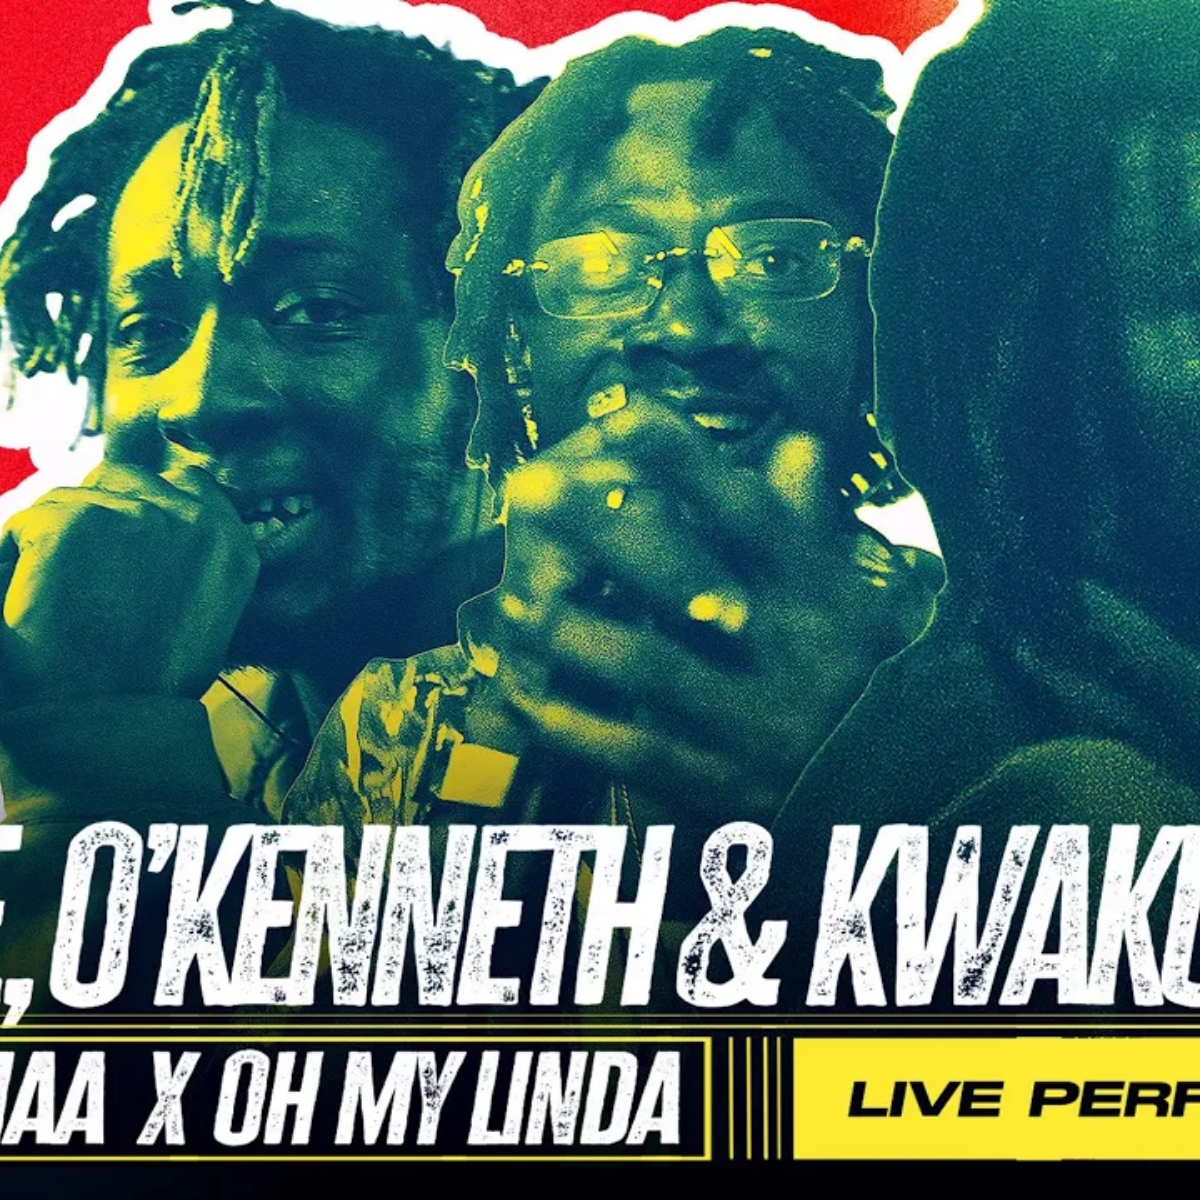 Reggie, OKenneth & Kwaku DMC - Obaa Hemaa x Oh My Linda (Live) 15